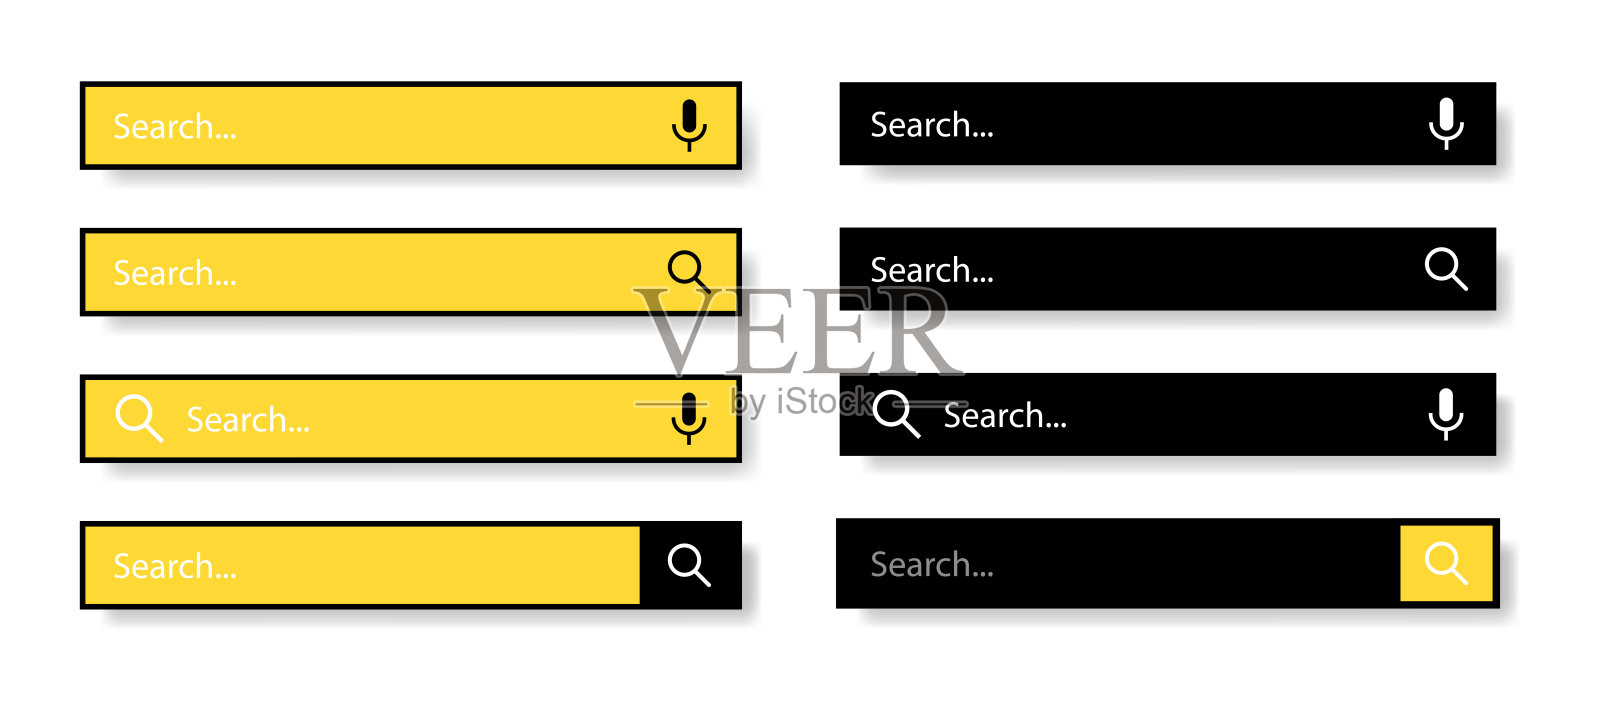 用户界面和网站的搜索栏。白色背景上的黑色和黄色图标。现代选择的搜索栏。矢量插图。插画图片素材